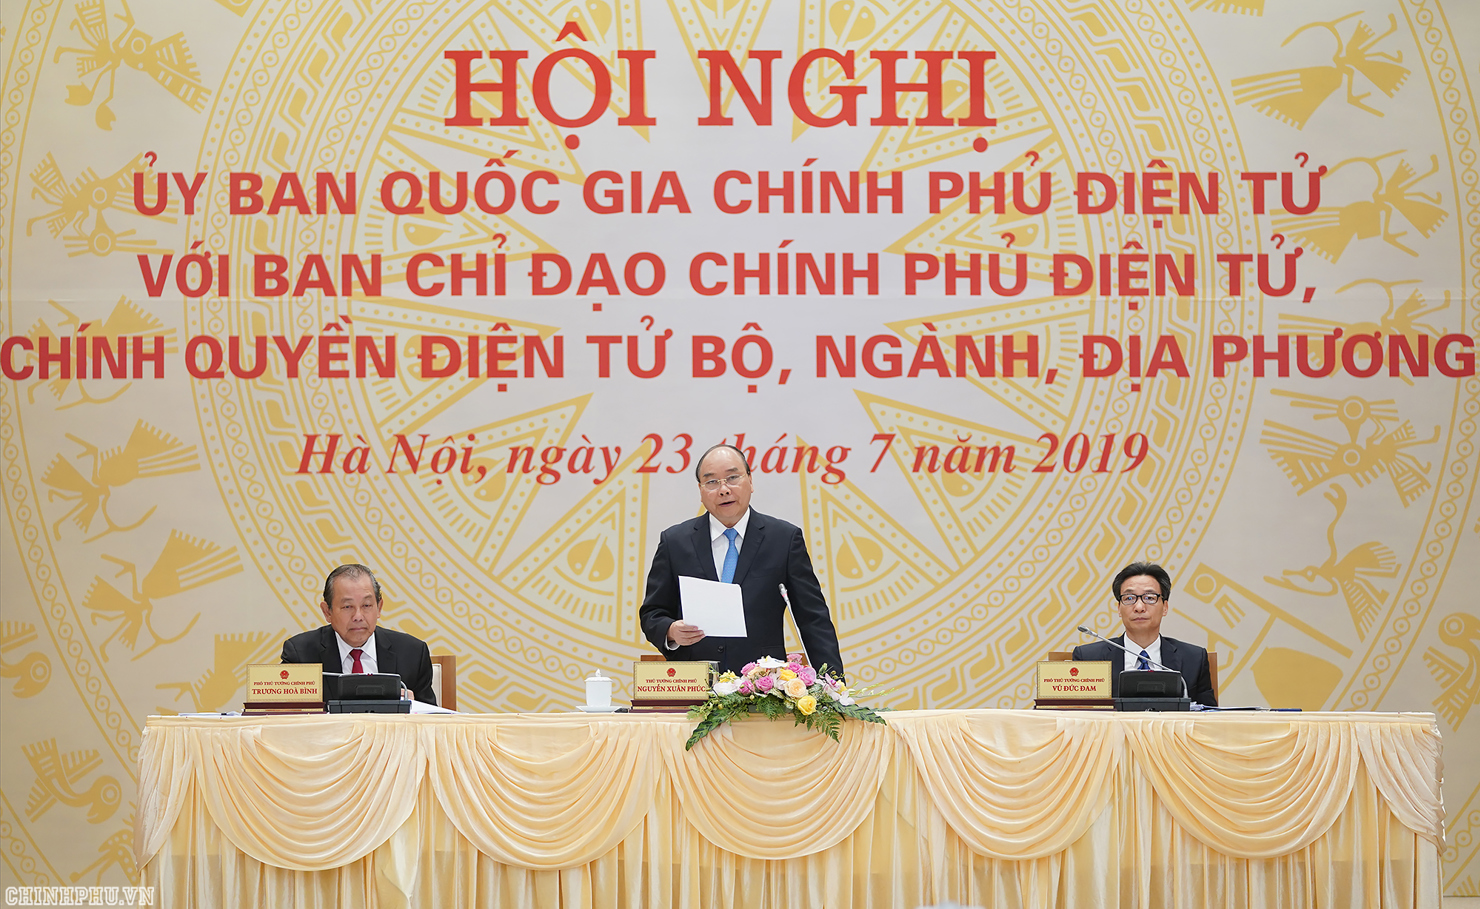 Thủ tướng Nguyễn Xuân Phúc và các Phó Thủ tướng Trương Hòa Bình, Vũ Đức Đam tại Hội nghị trực tuyến Ủy ban quốc gia về Chính phủ điện tử.